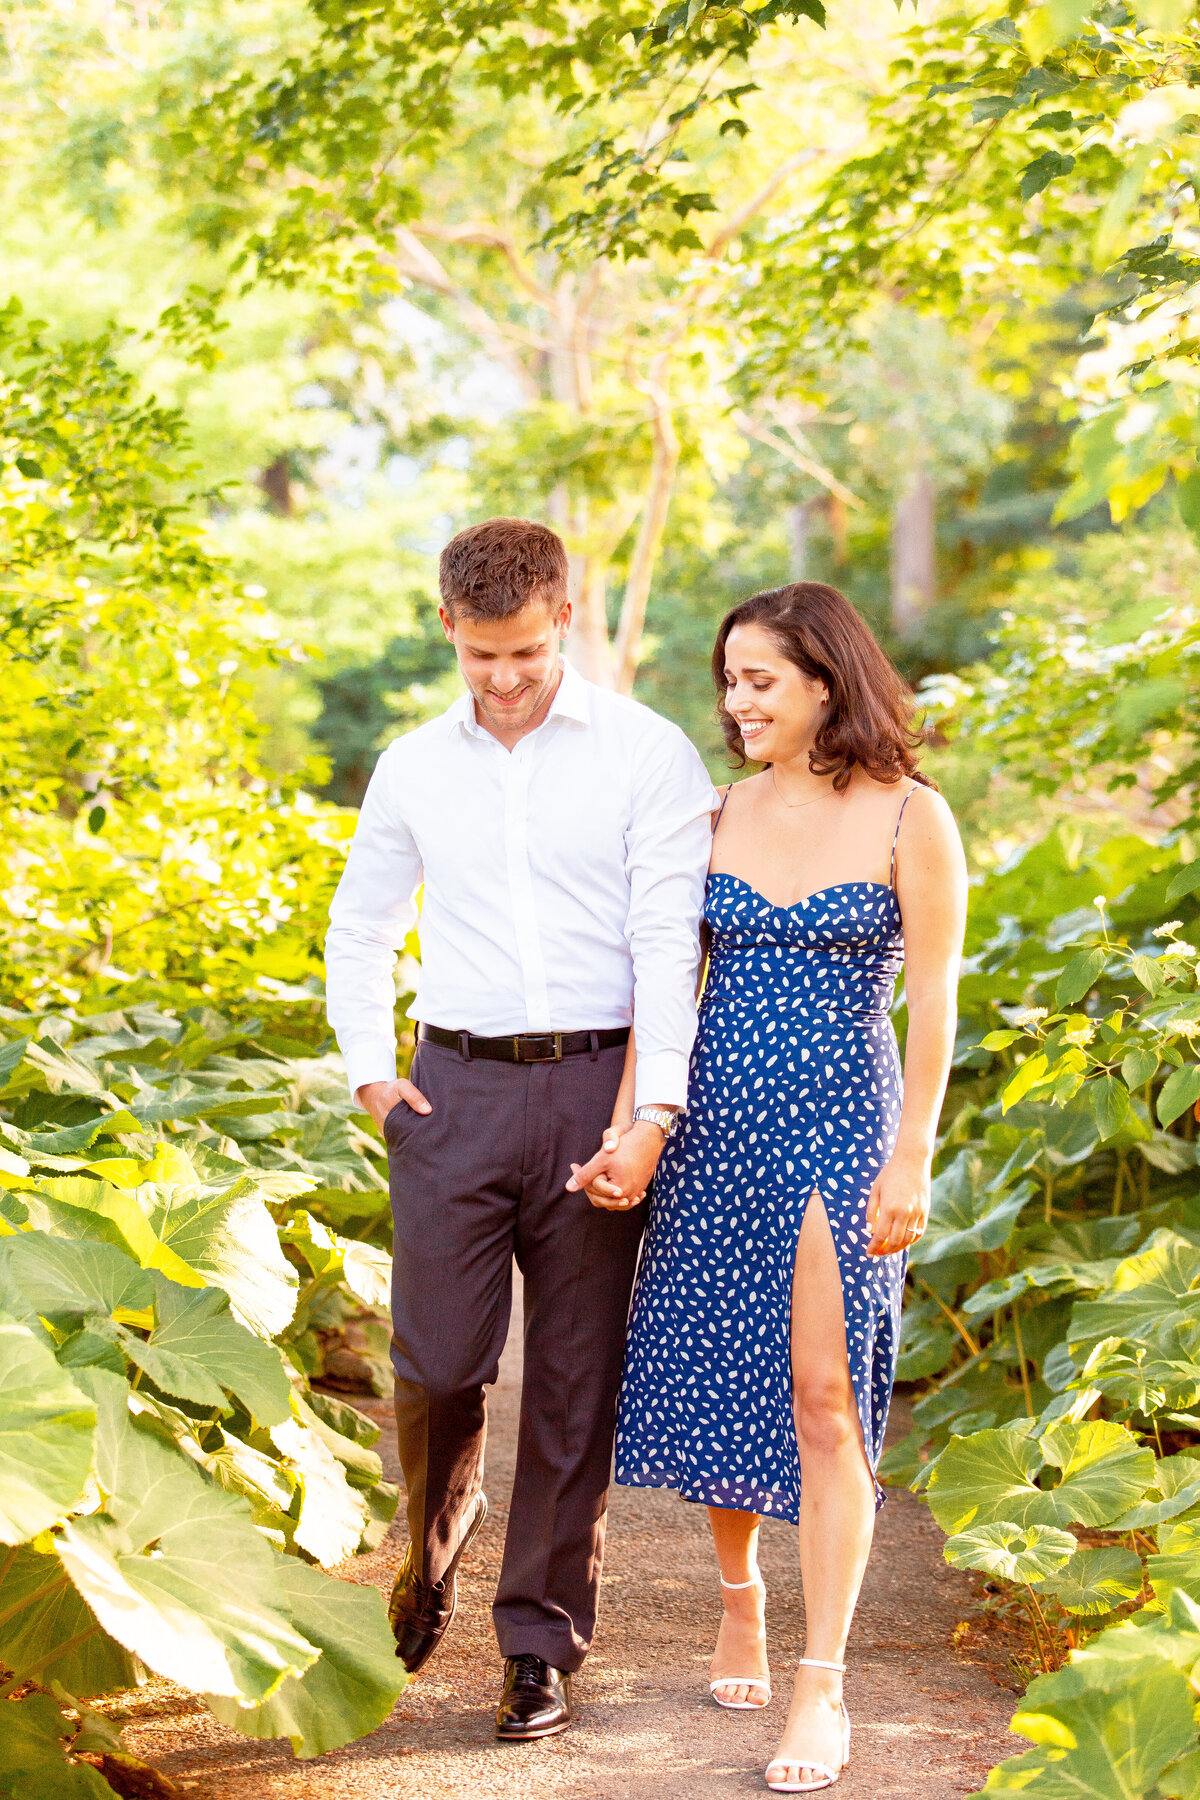 Couple hold hands and walk through a garden.